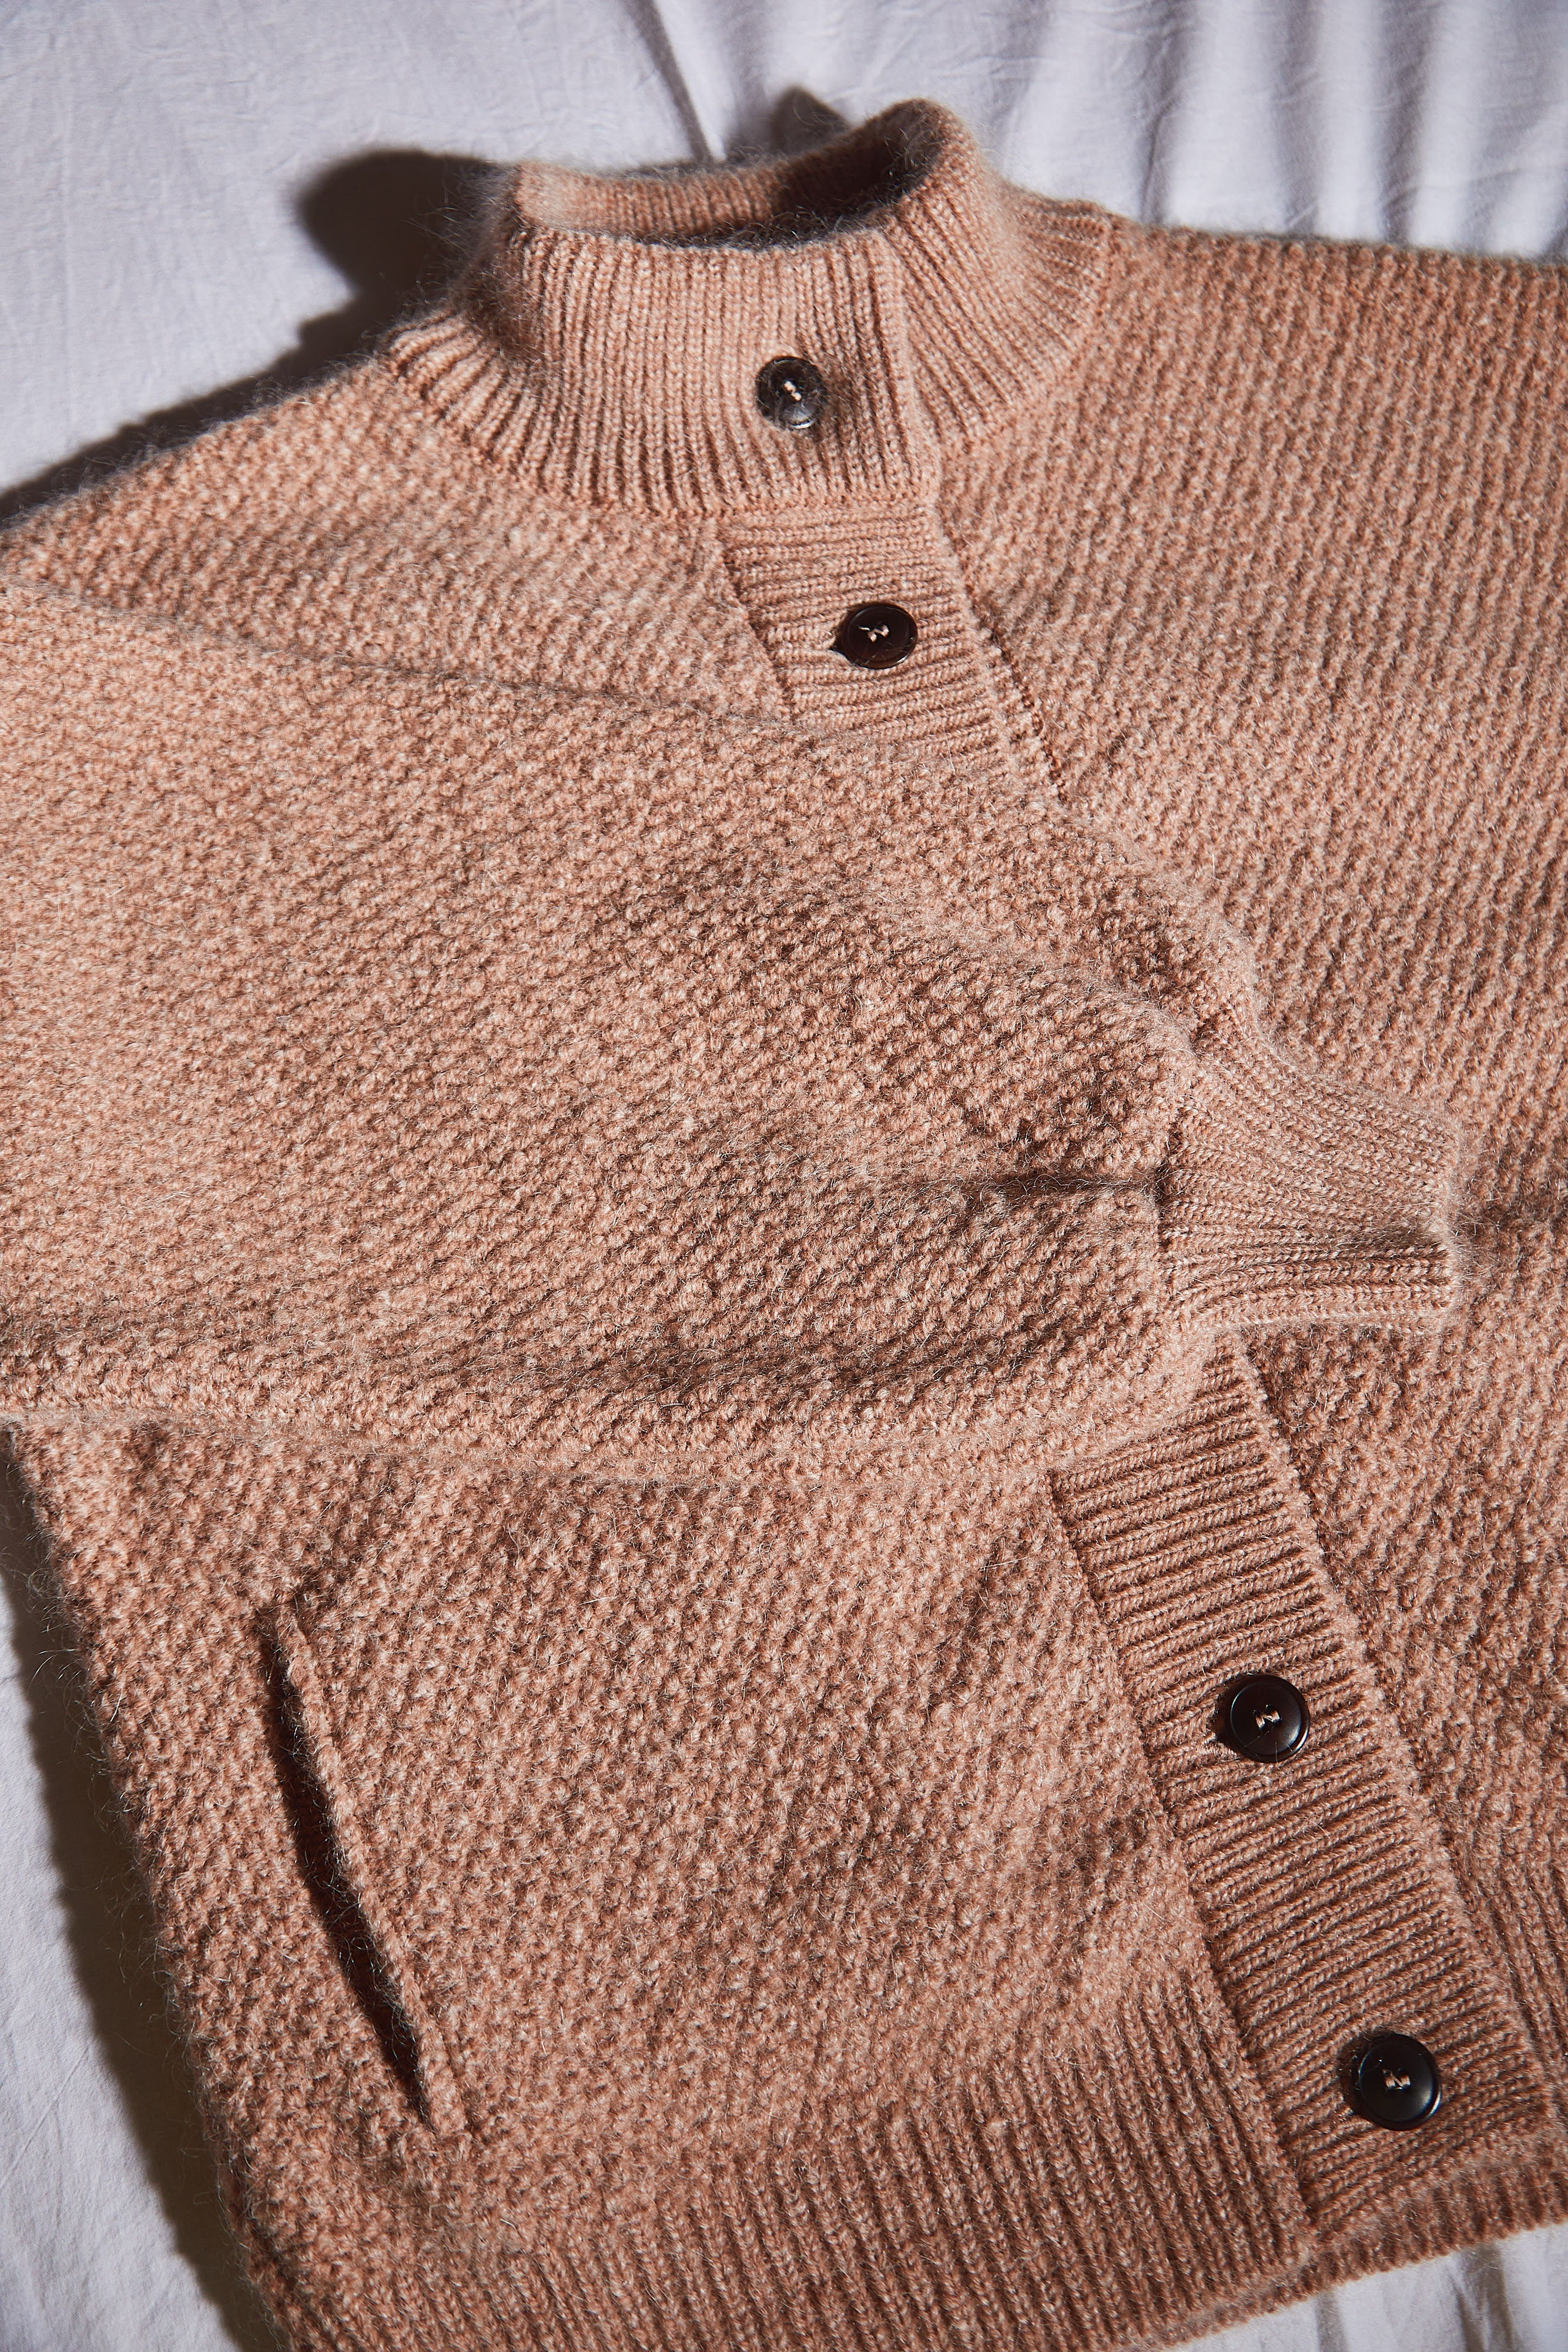  GEORGE Wool Jacket - 100% Cruelty Free Merino Wool in light pink - Spanish Merino Wool jacket - L'Envers